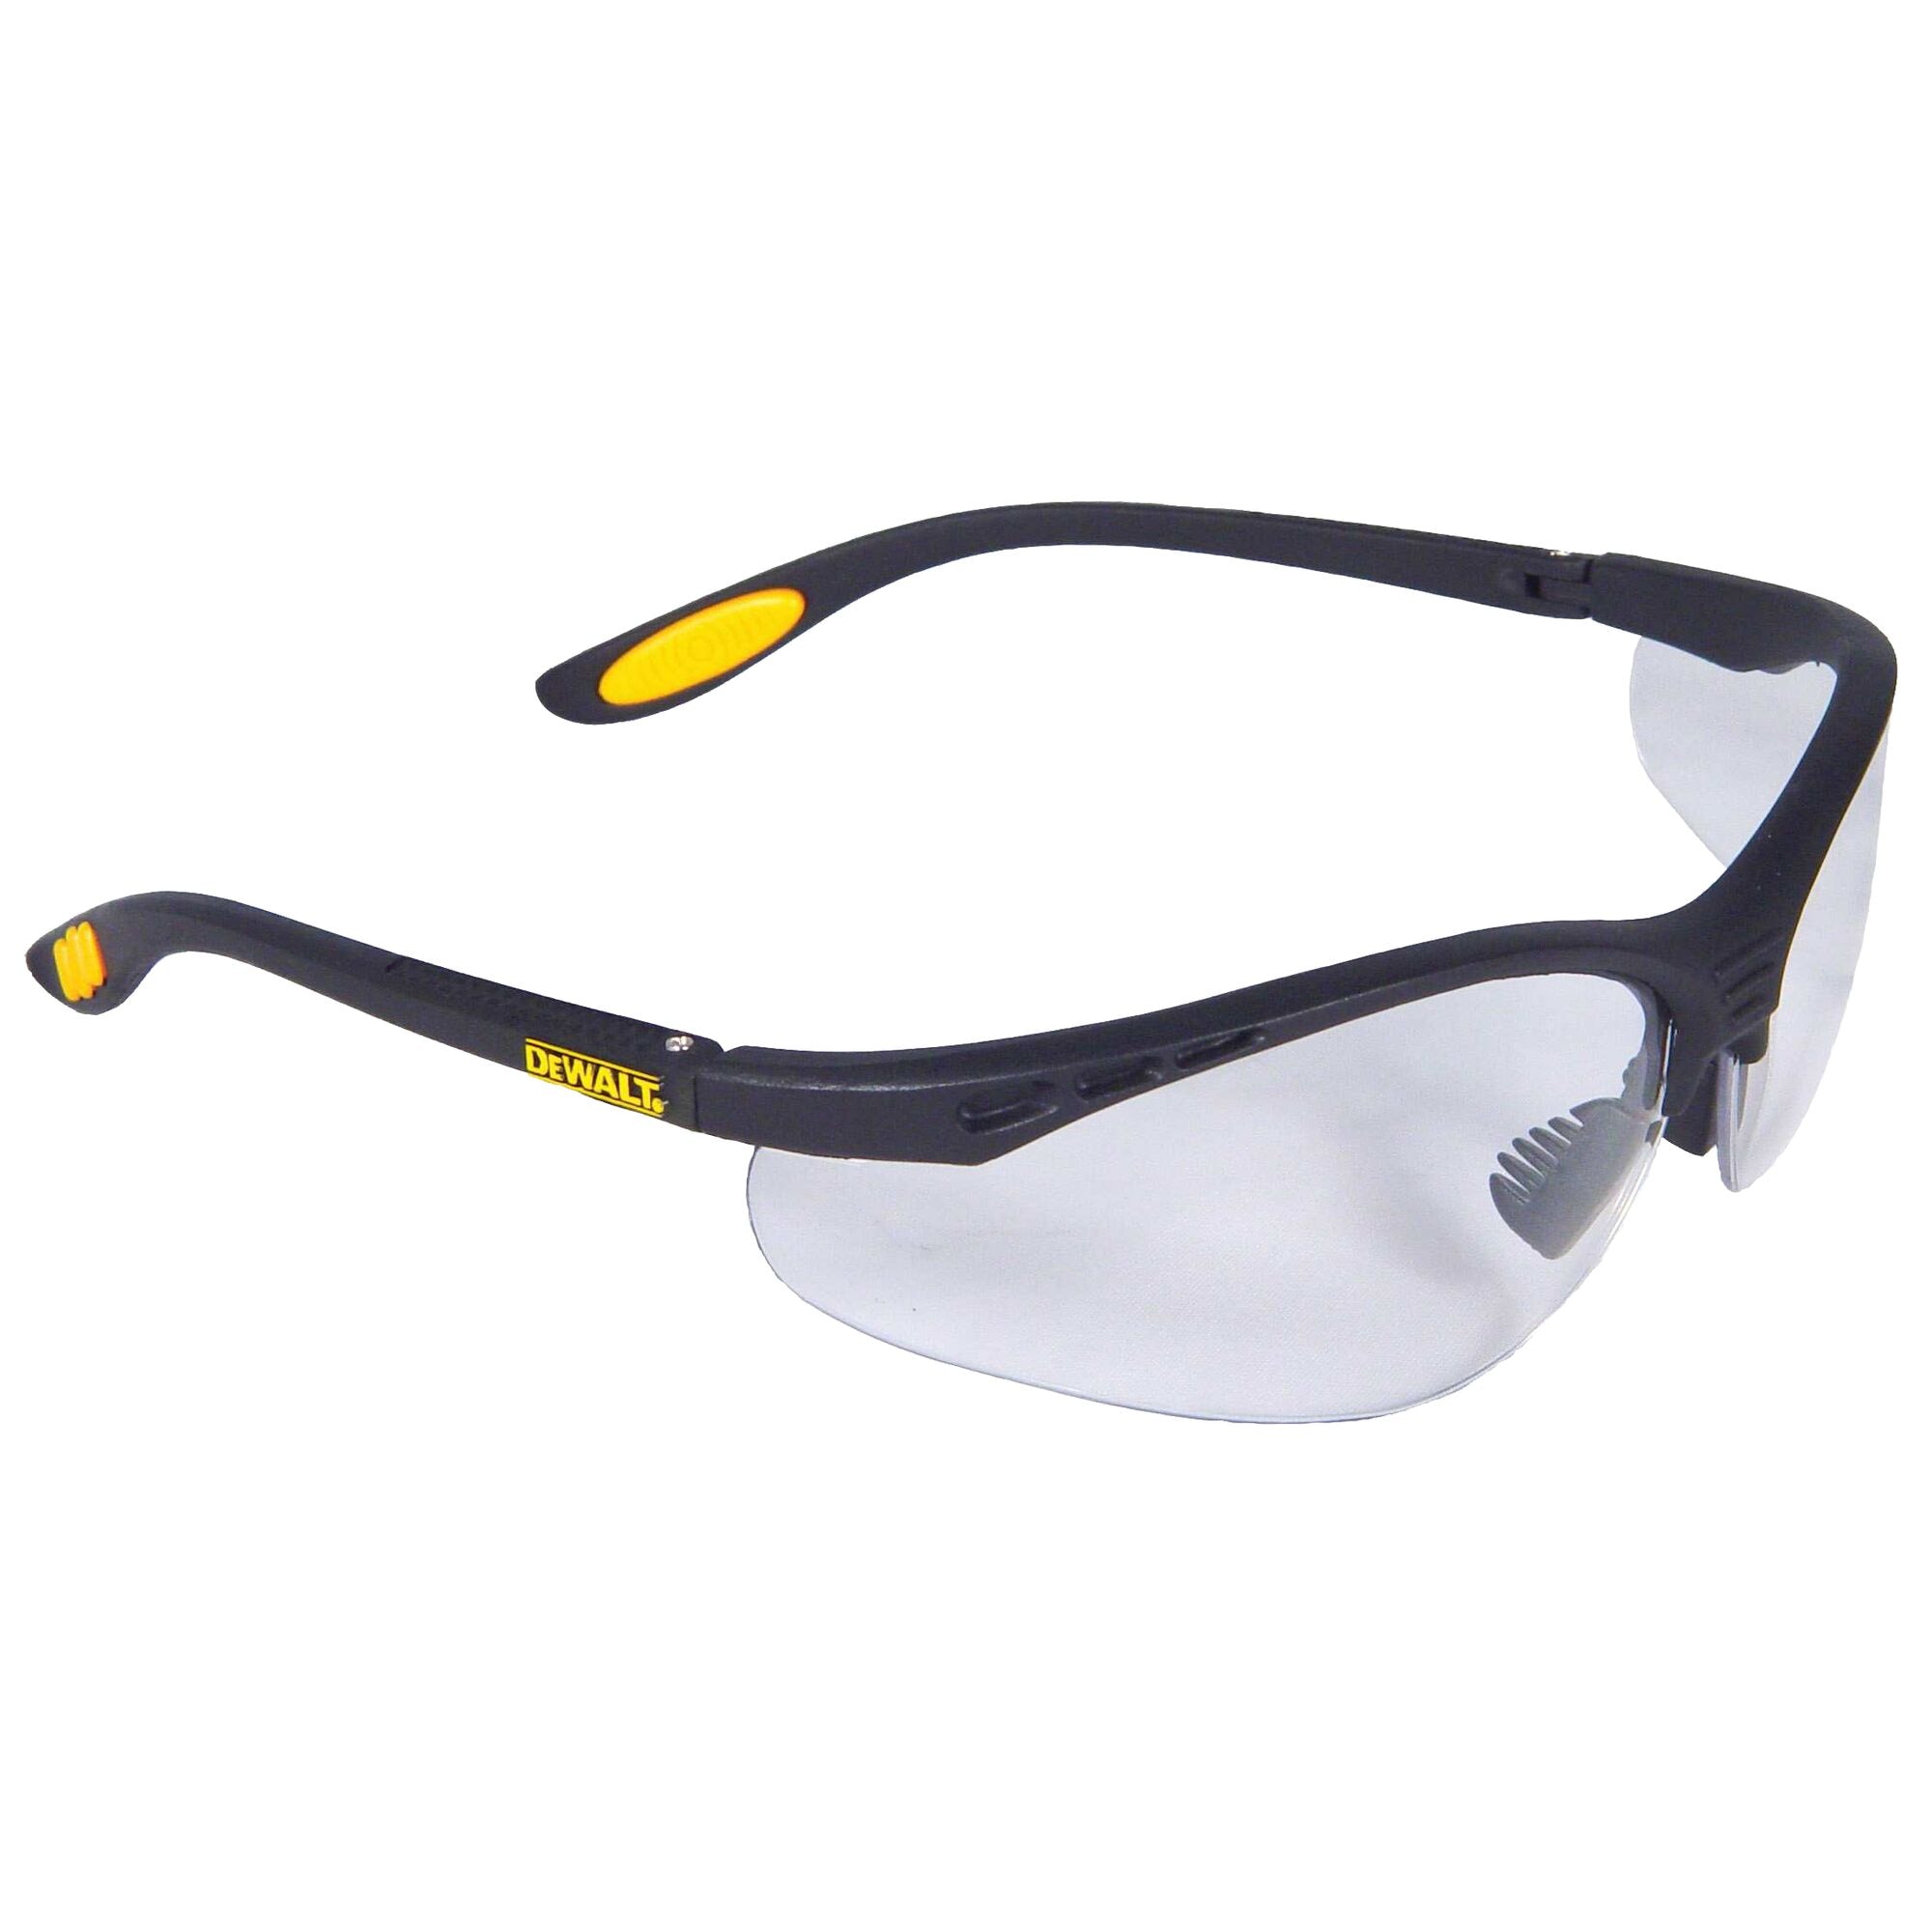 Dewalt Bohrer Rauch/Grau Sicherheit Brille Matt/Black Rahmen Sonnenbrille Z87+ 